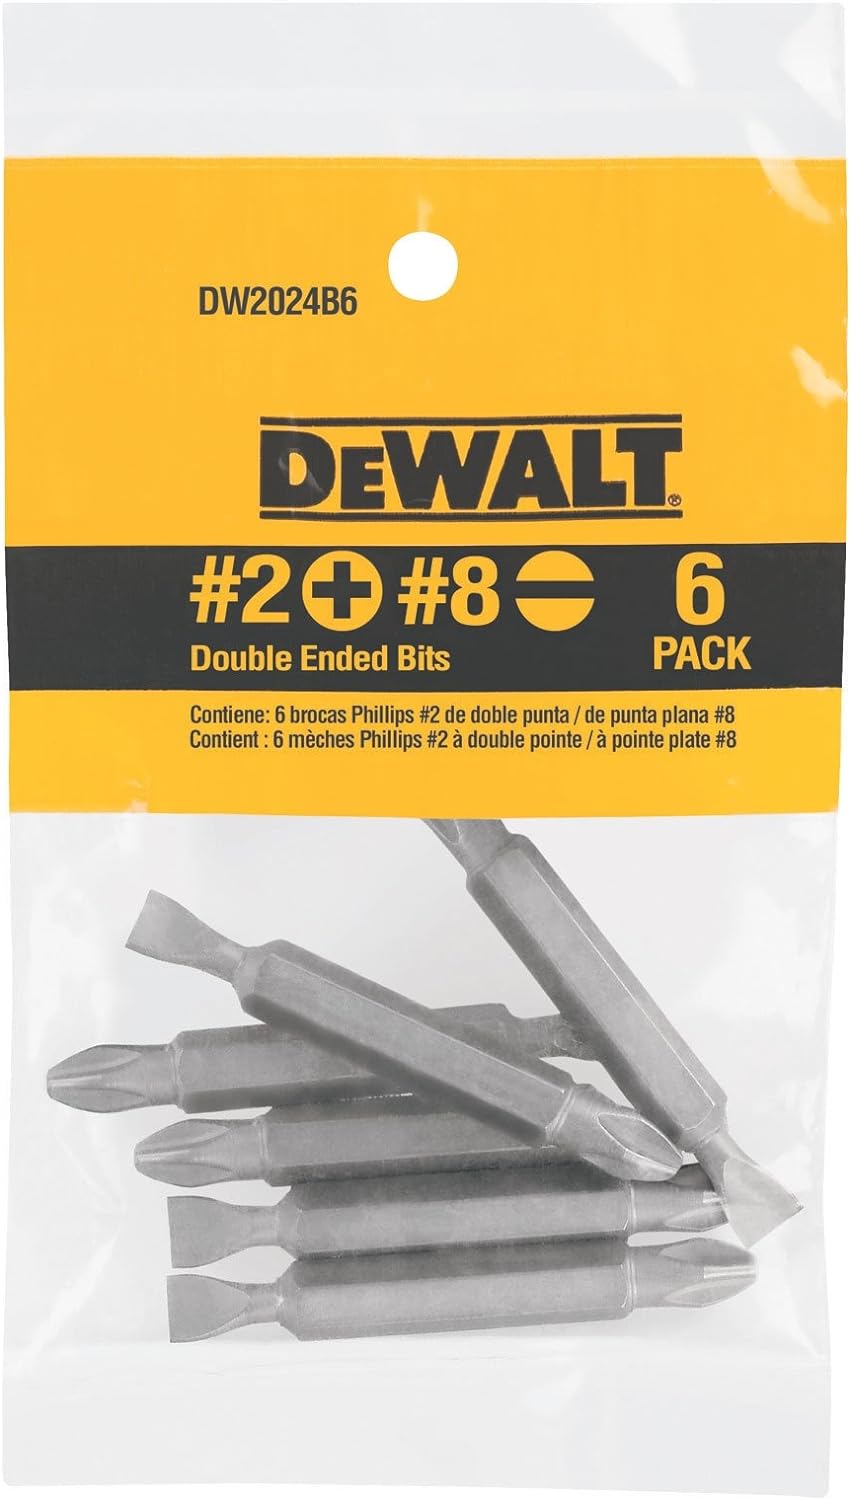 DEWALT Screwdriver Set, #2 Phillips / No. 8 Slotted Double Ended Bit, 6-Pack (DW2024B6)